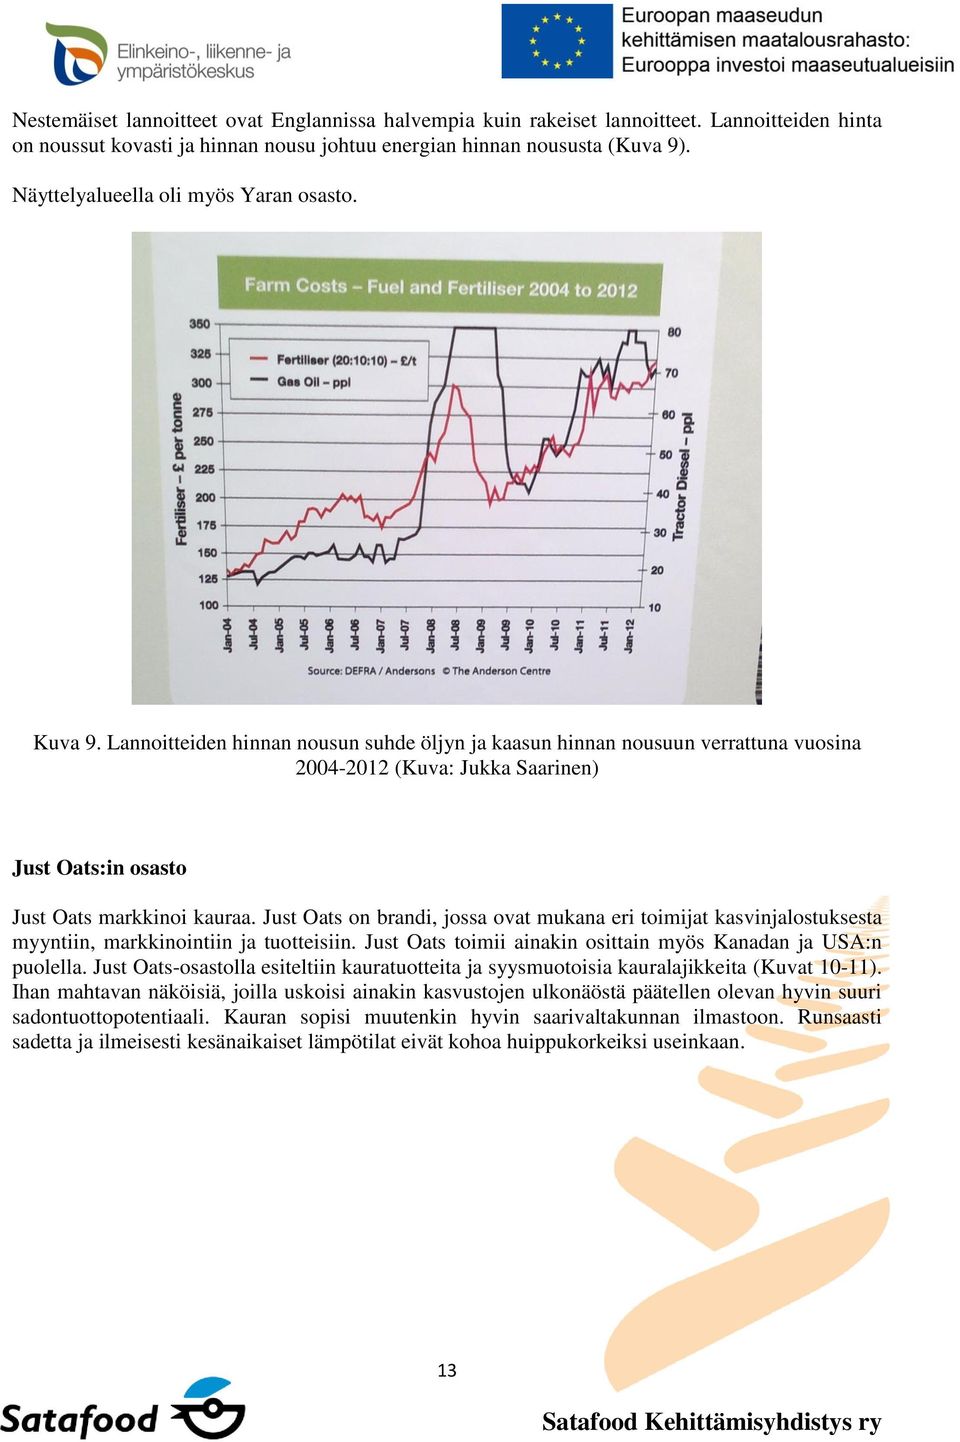 Lannoitteiden hinnan nousun suhde öljyn ja kaasun hinnan nousuun verrattuna vuosina 2004-2012 (Kuva: Jukka Saarinen) Just Oats:in osasto Just Oats markkinoi kauraa.